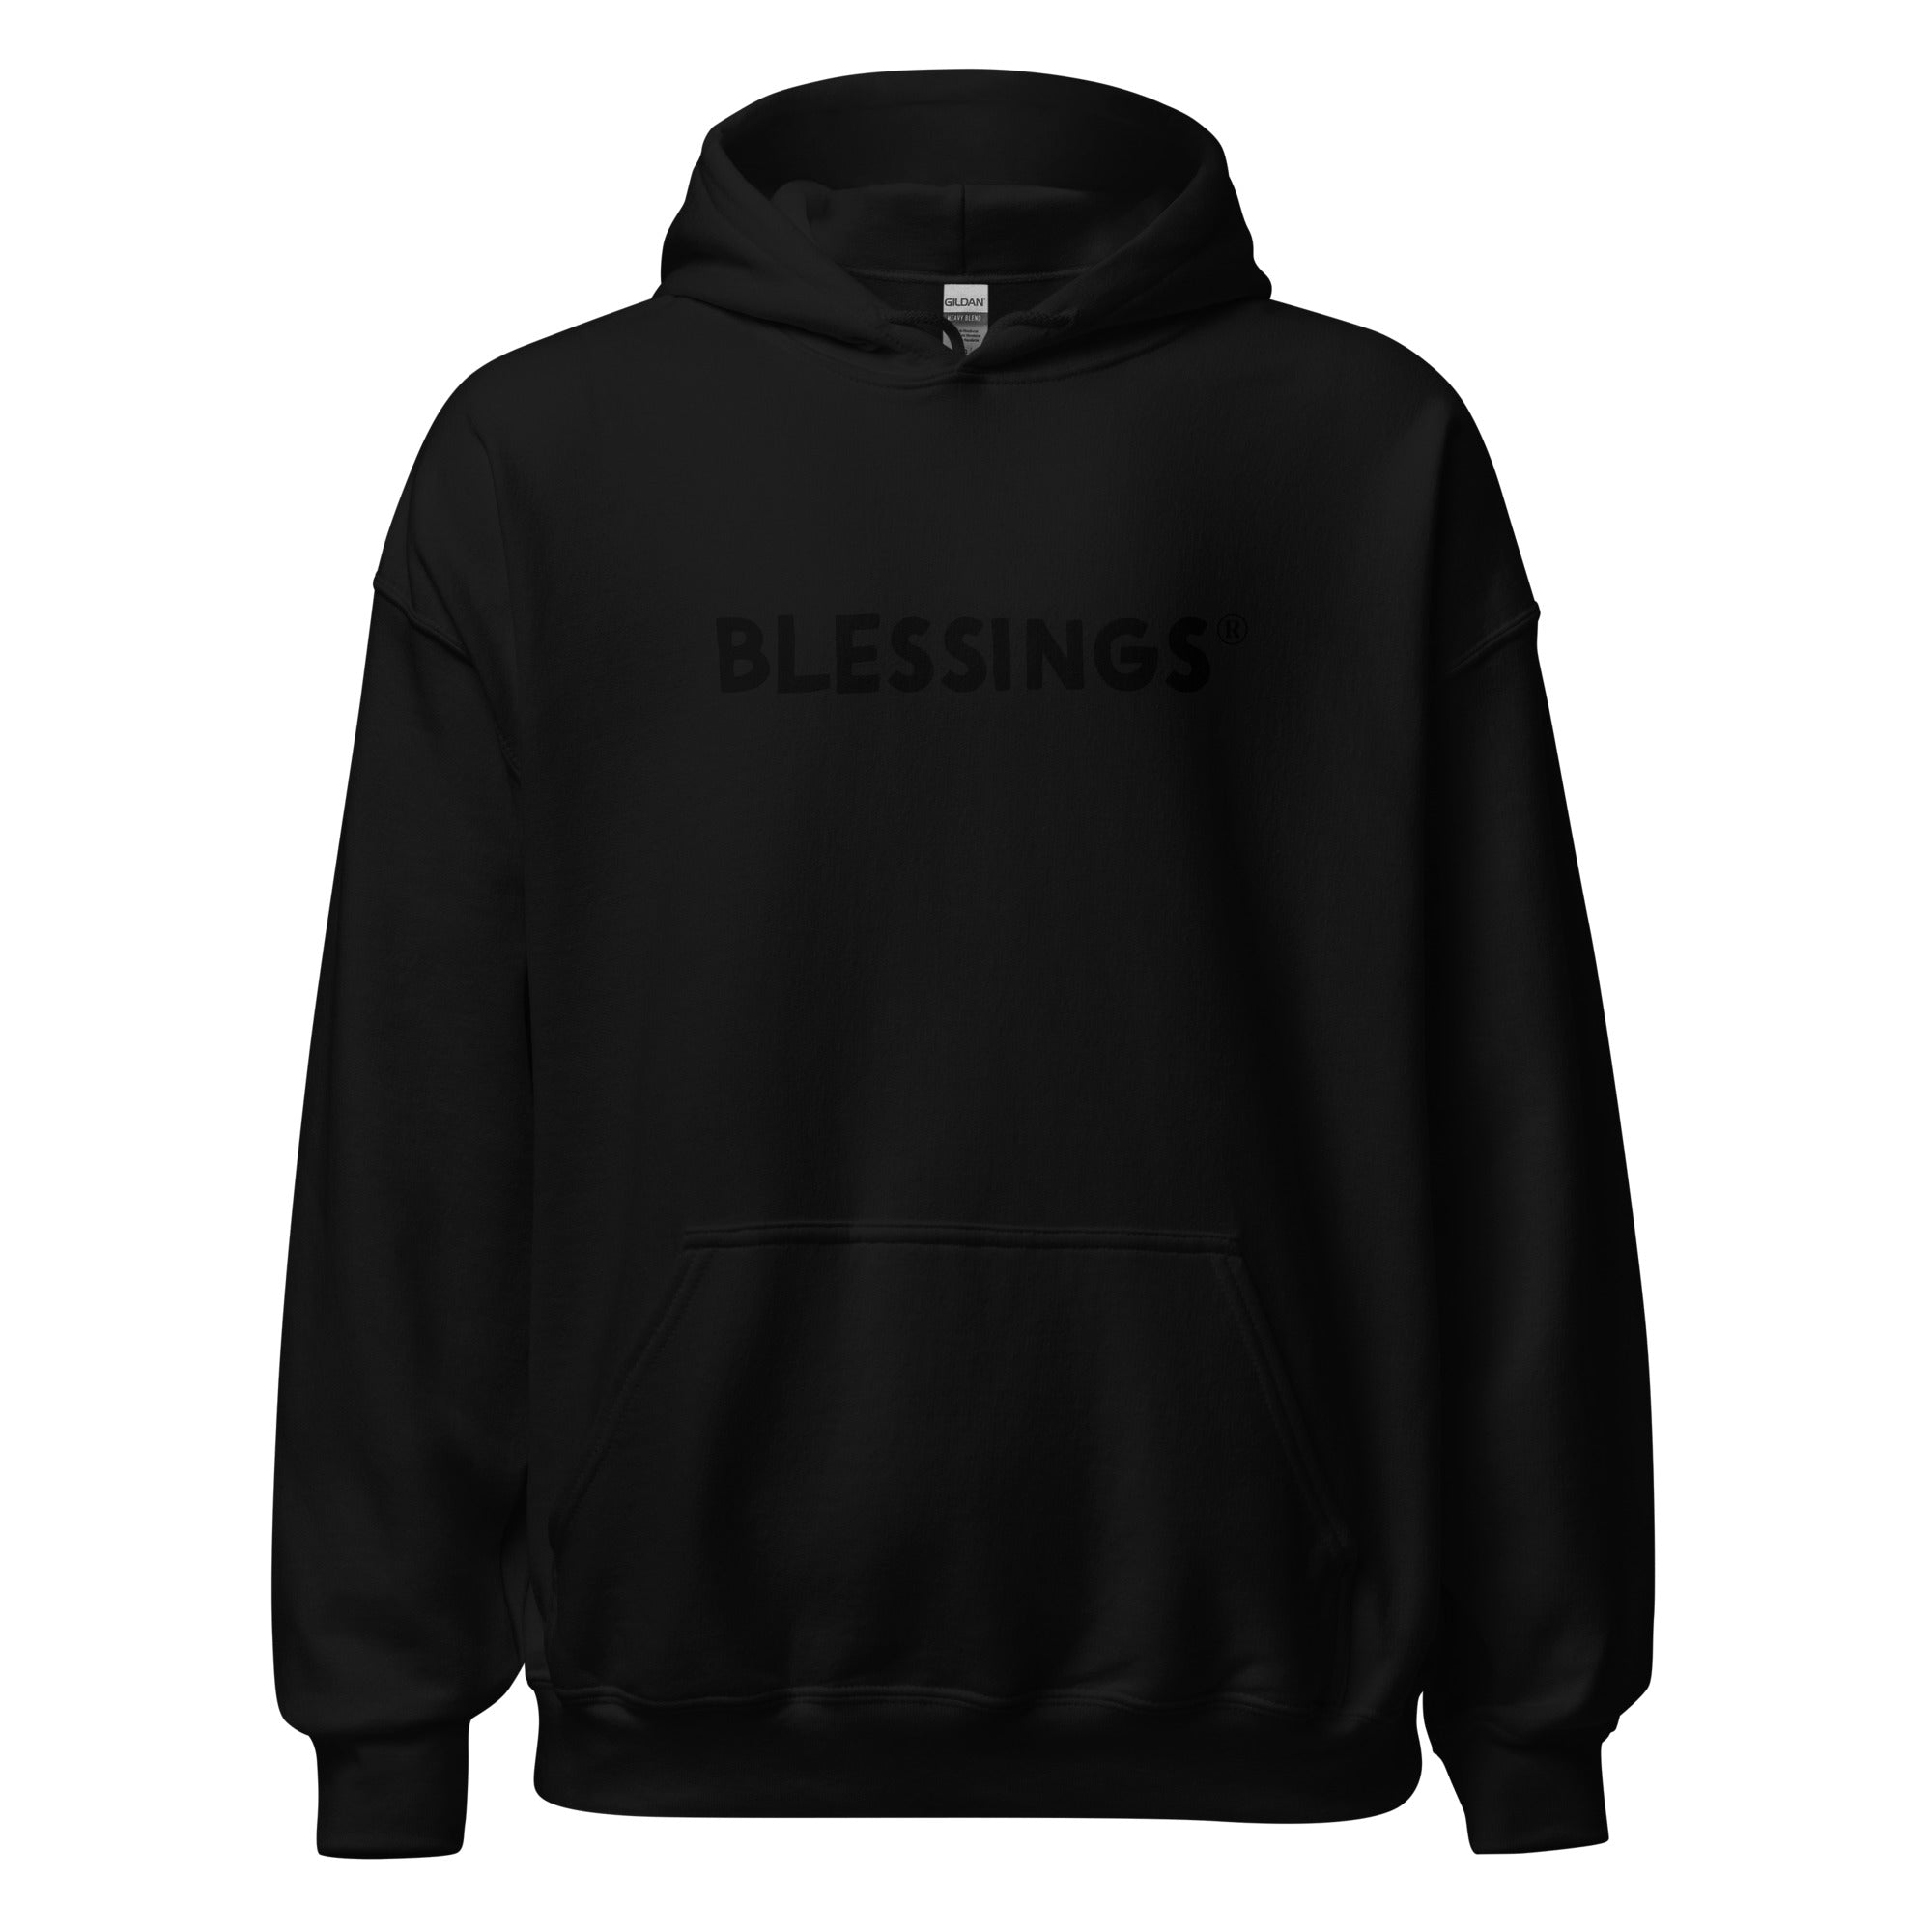 Blessings Unisex Hoodie – Smart Shop Worldwide